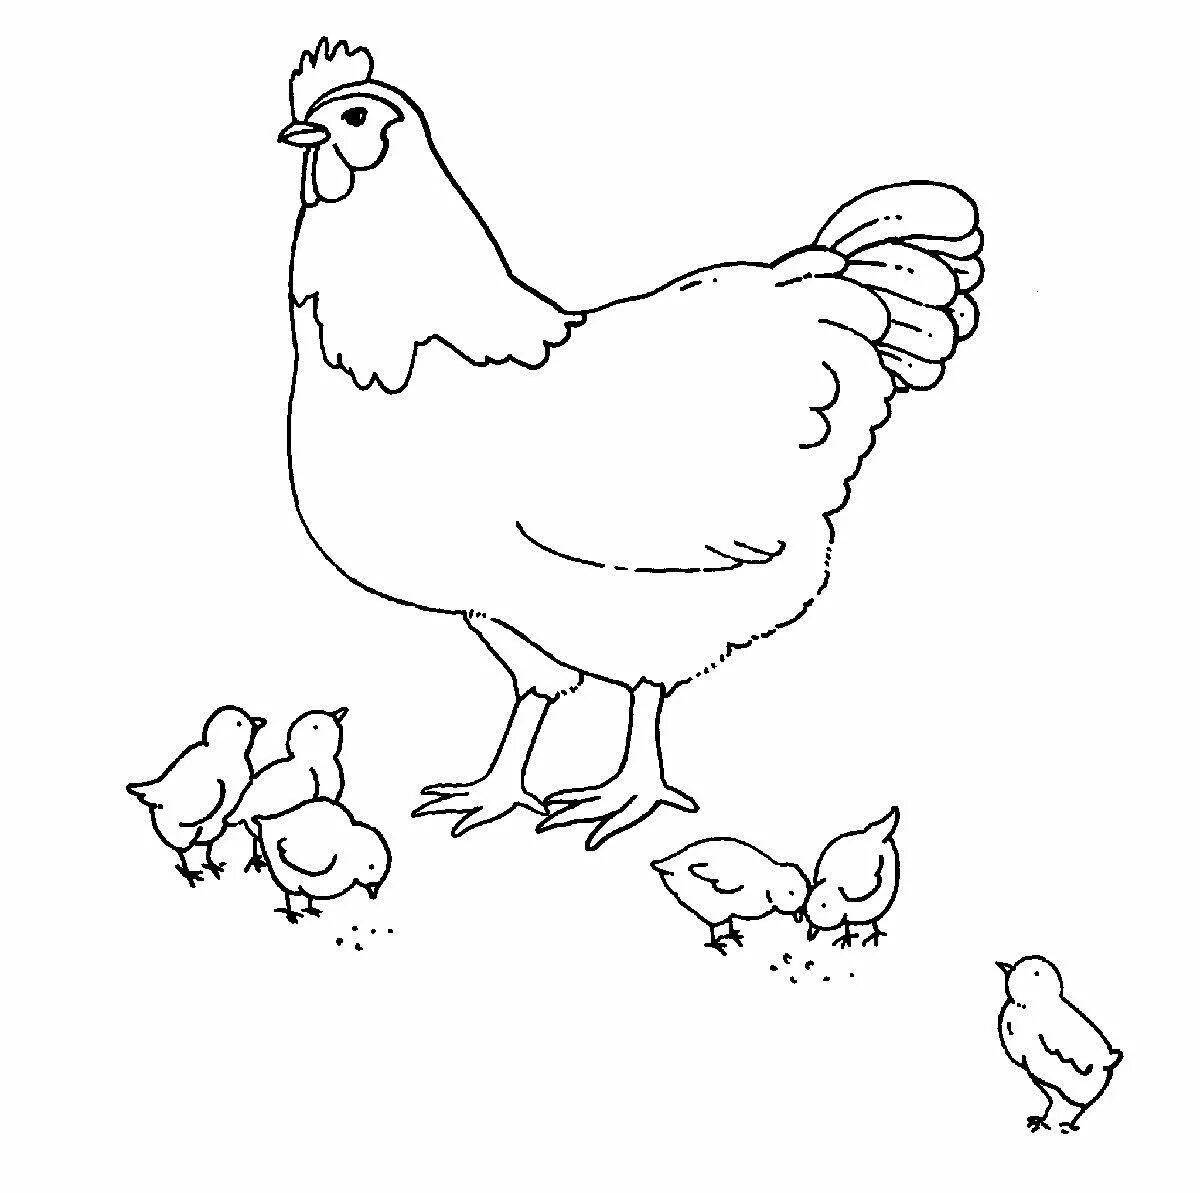 Увлекательный рисунок курицы для детей